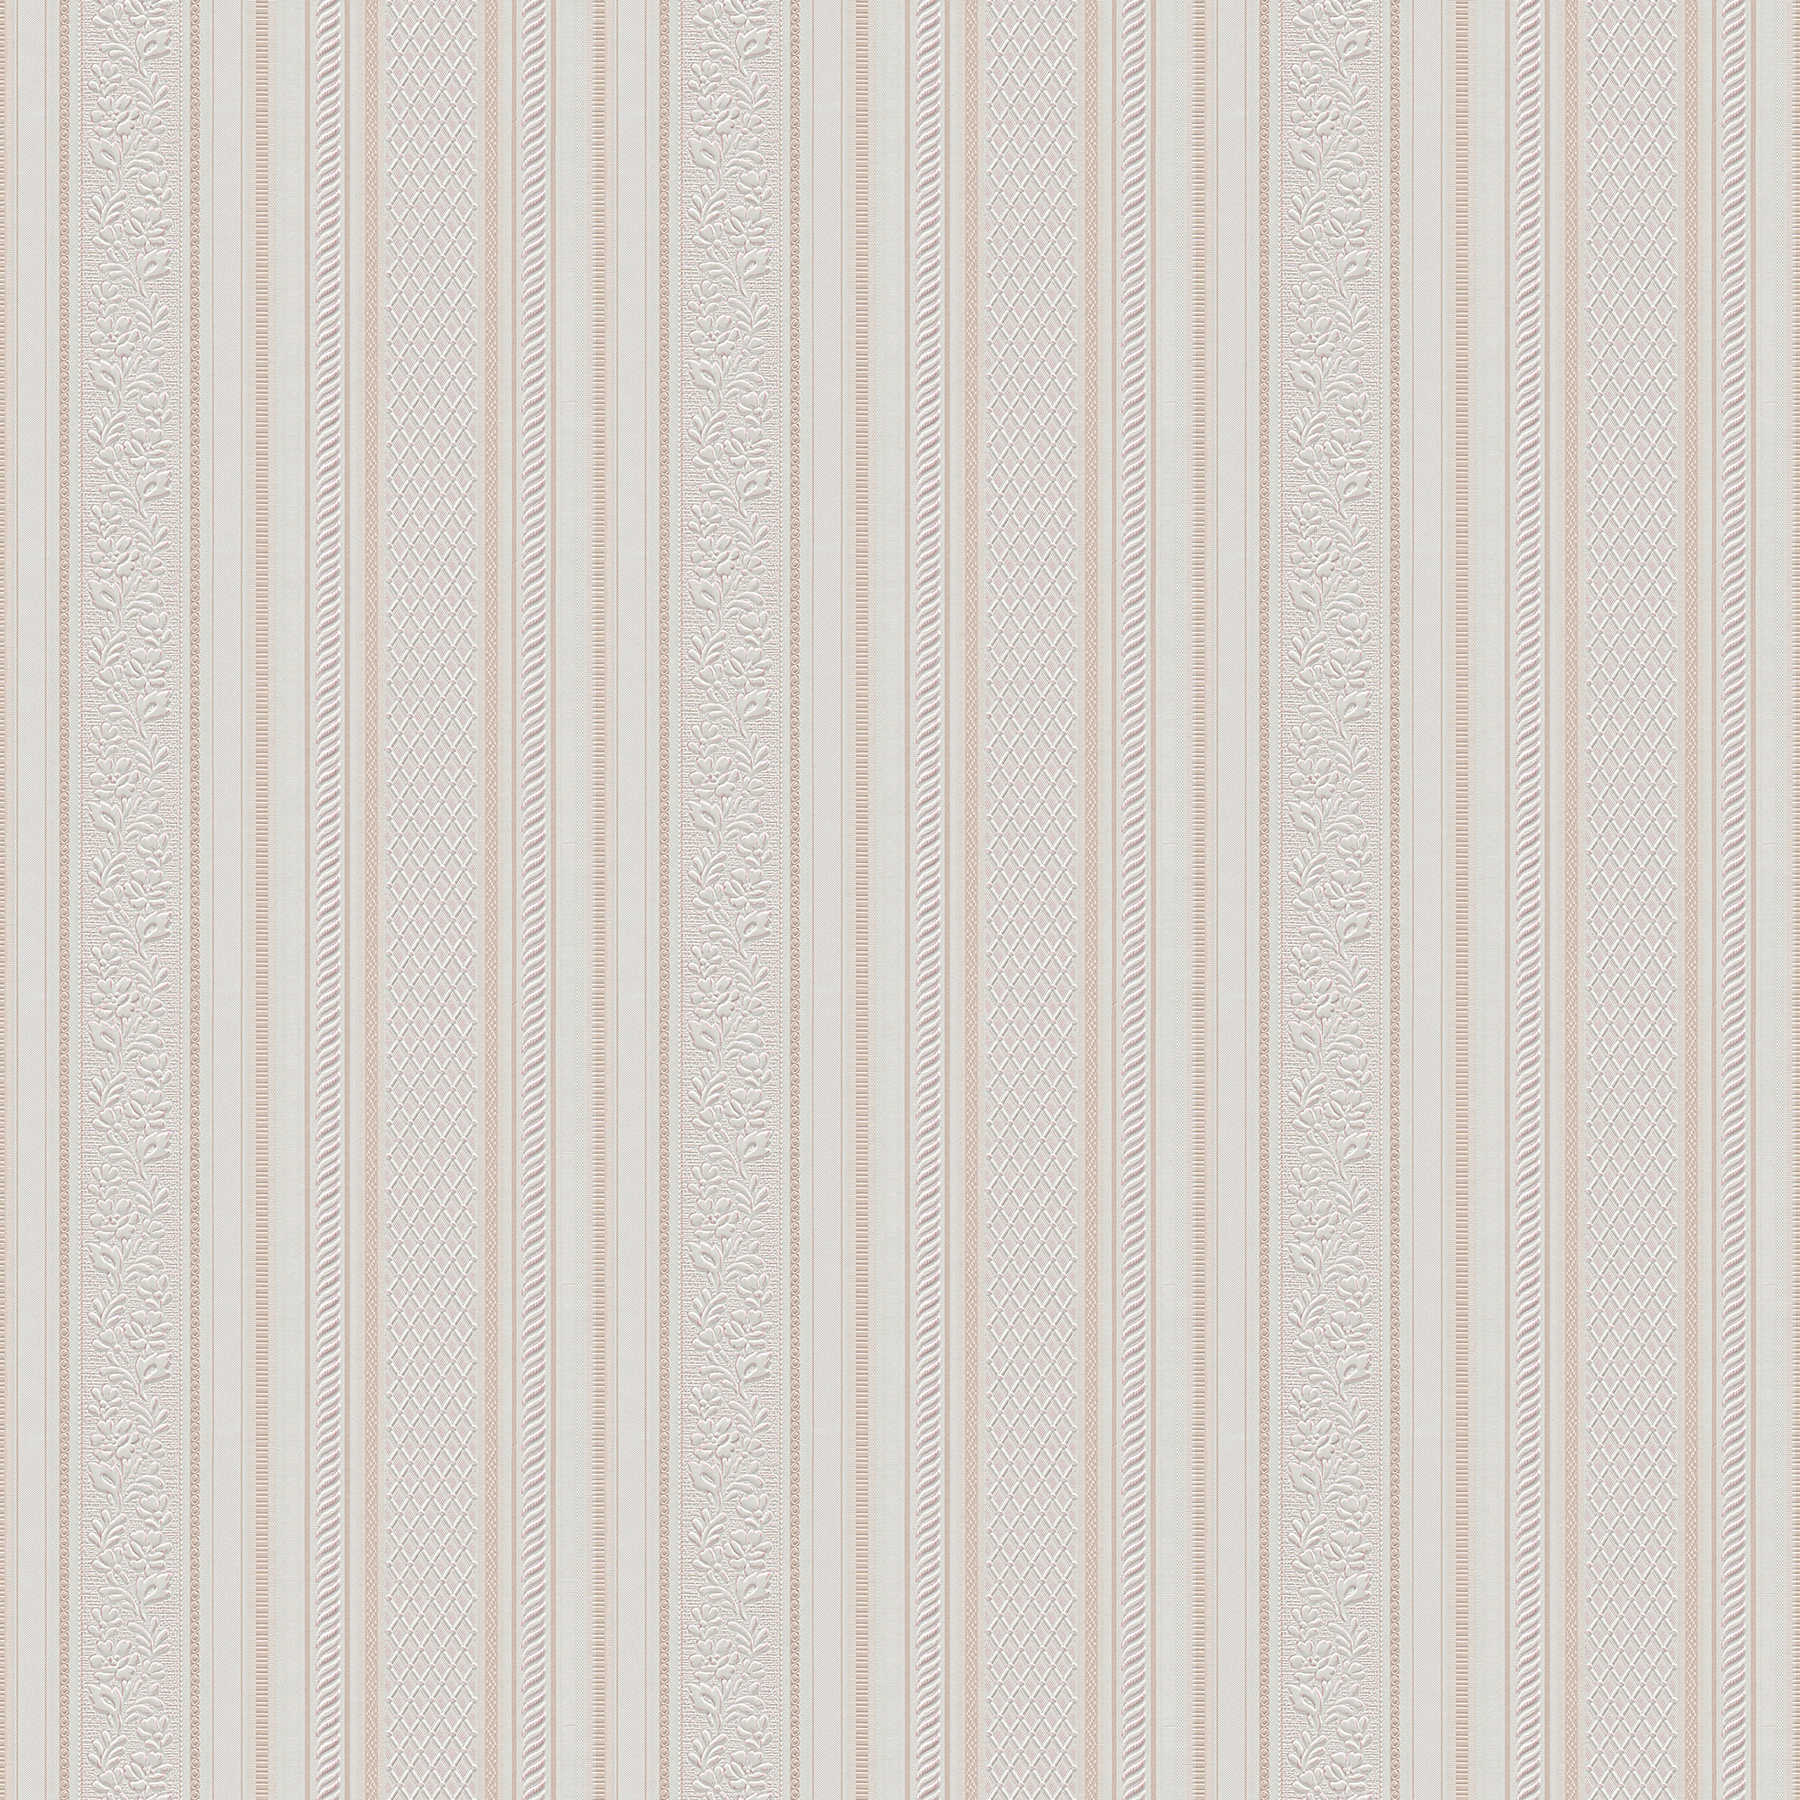 Papel pintado a rayas con adornos de diseño estilo Biedermeier - beige, crema, blanco
